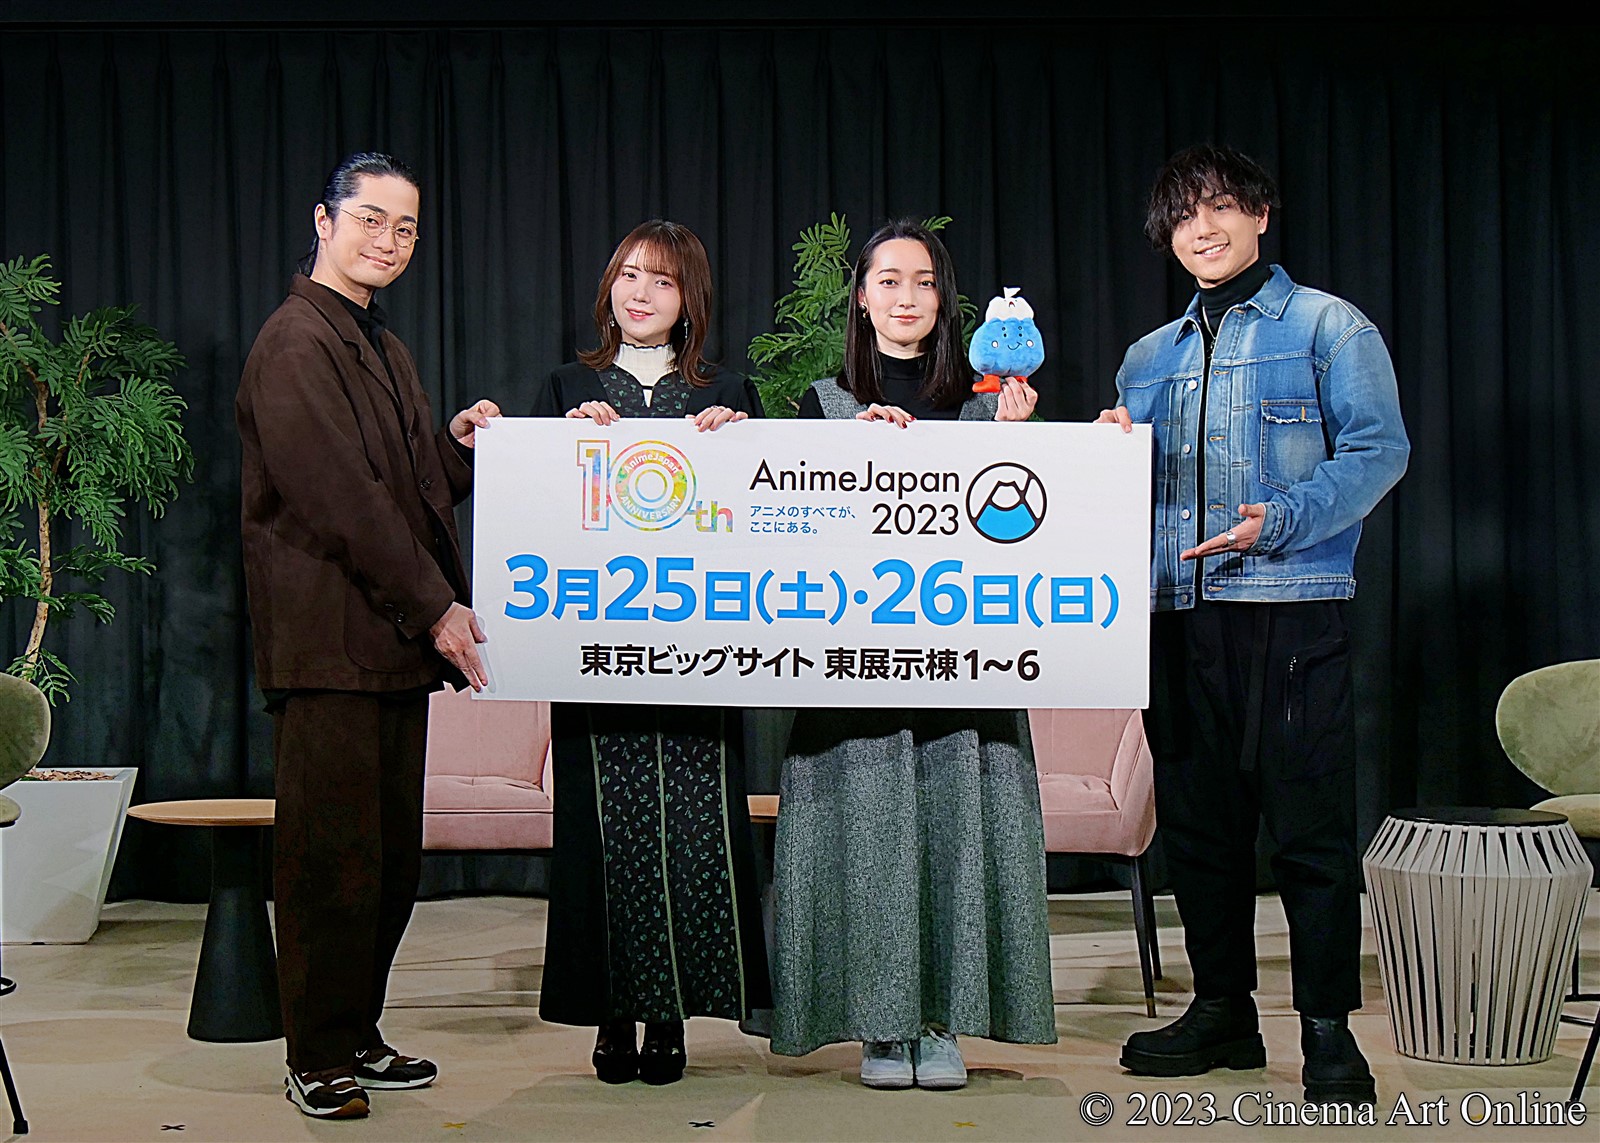 【写真】AnimeJapan 2023 AJステージラインナップ発表会 (福山潤、鬼頭明里、藤田茜、鈴木崚汰)